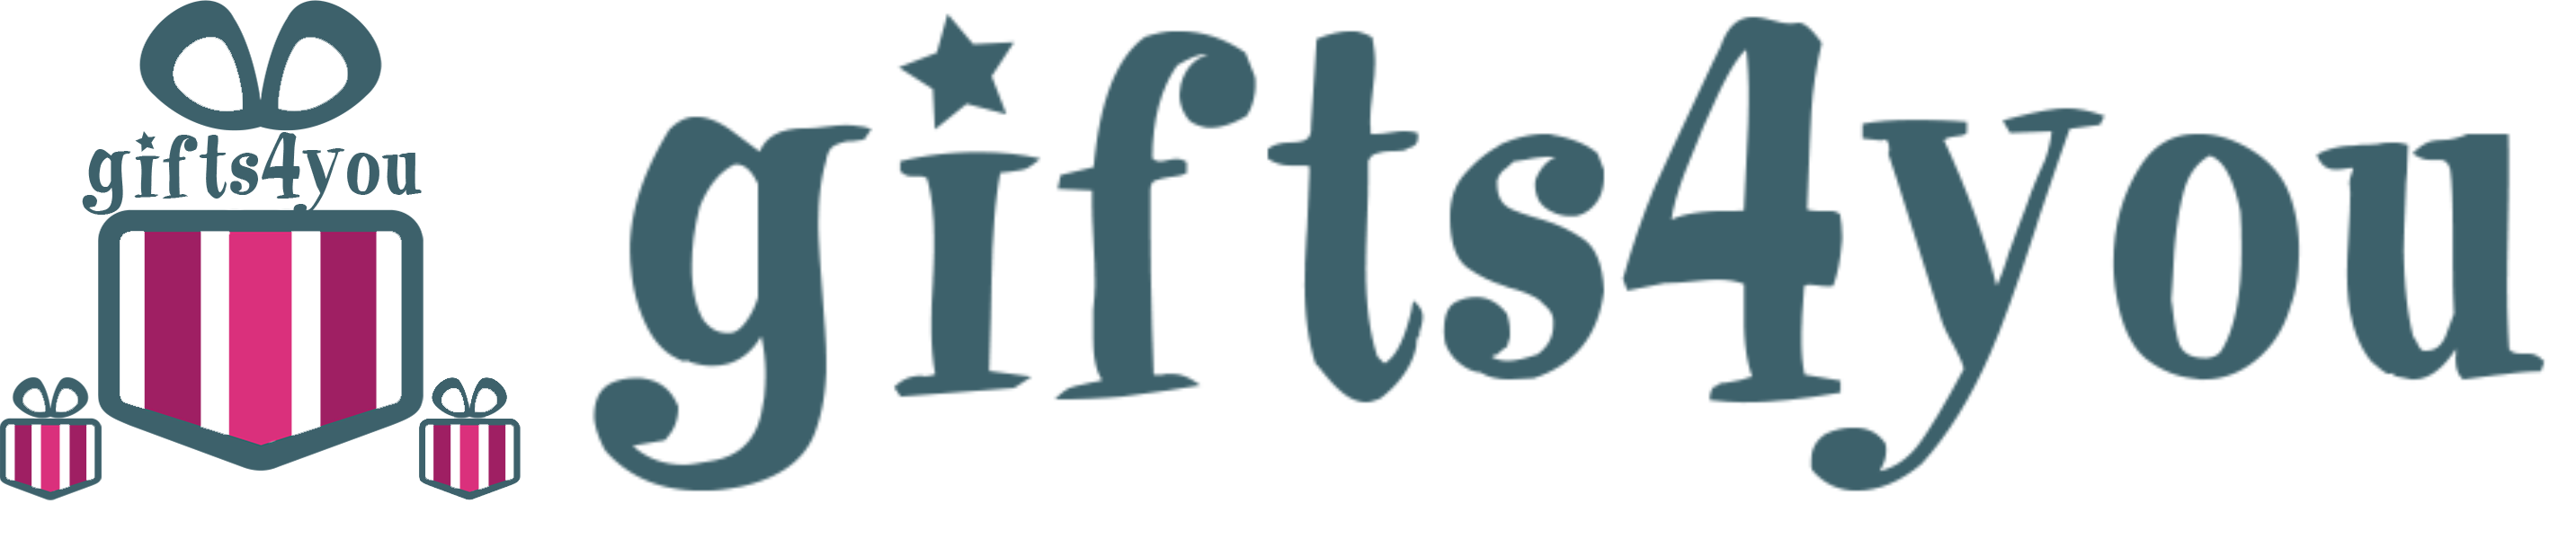 Giftshop footer logo